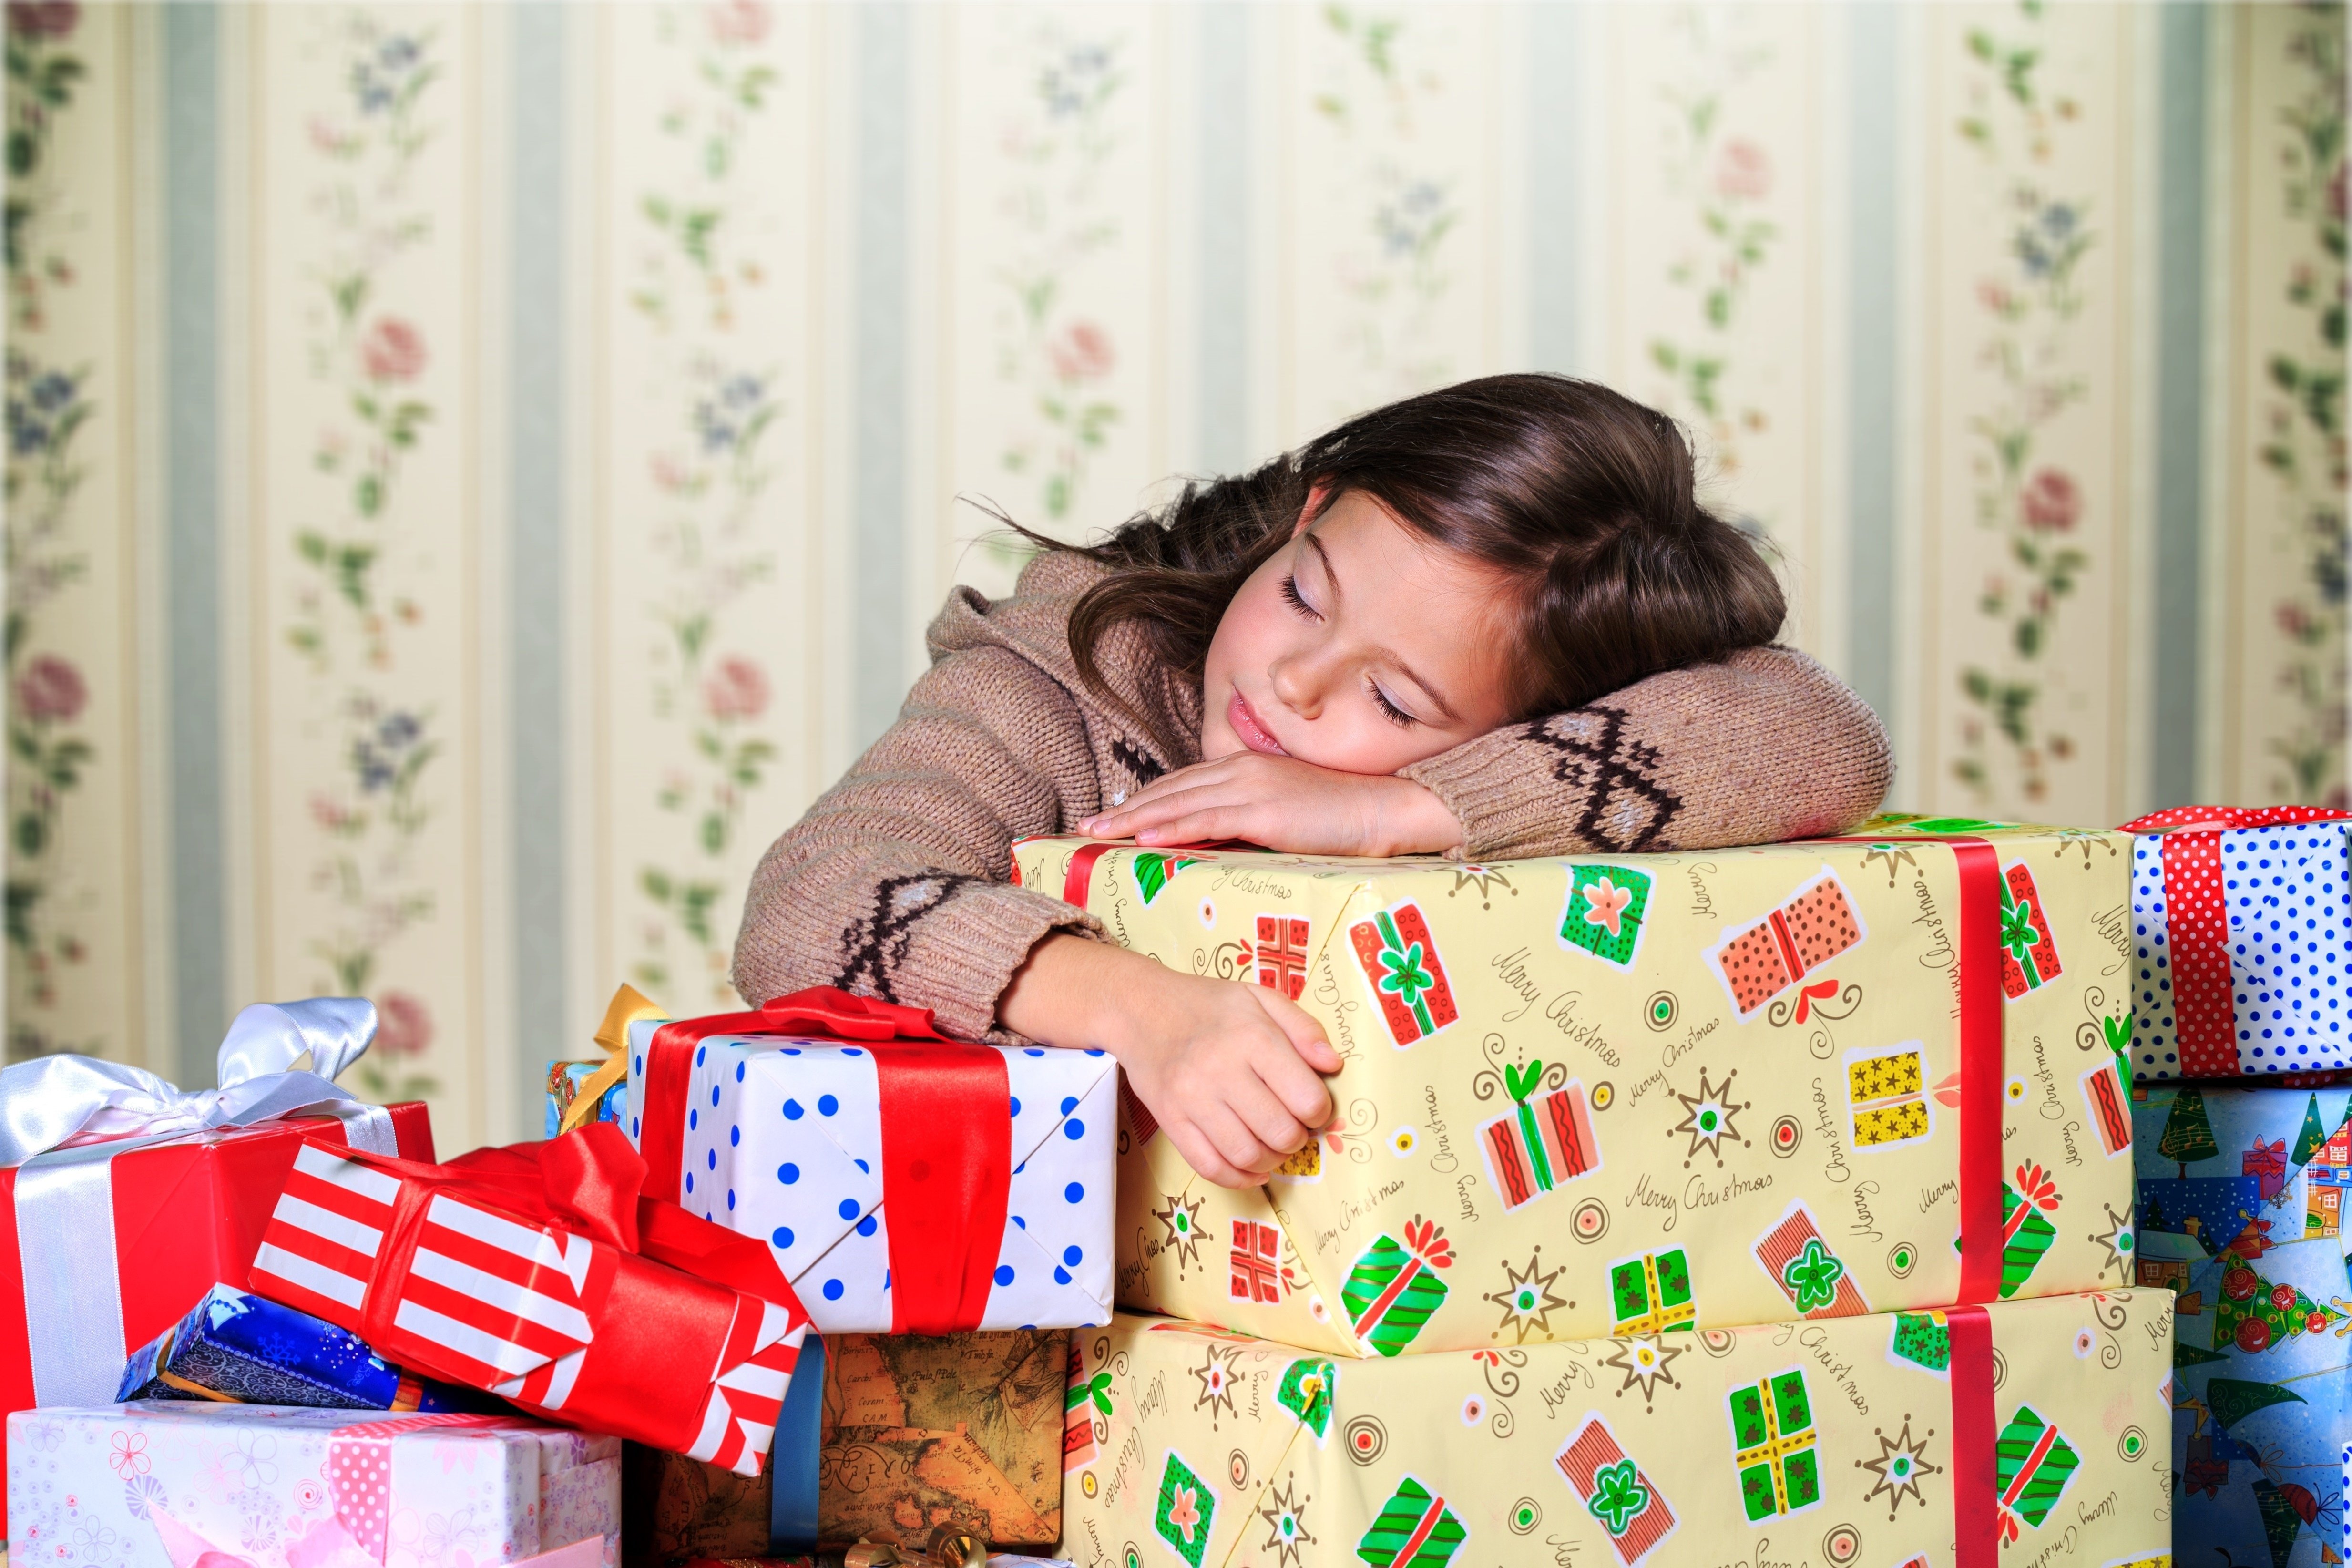 Mädchen mit Geschenken | Quelle: Shutterstock